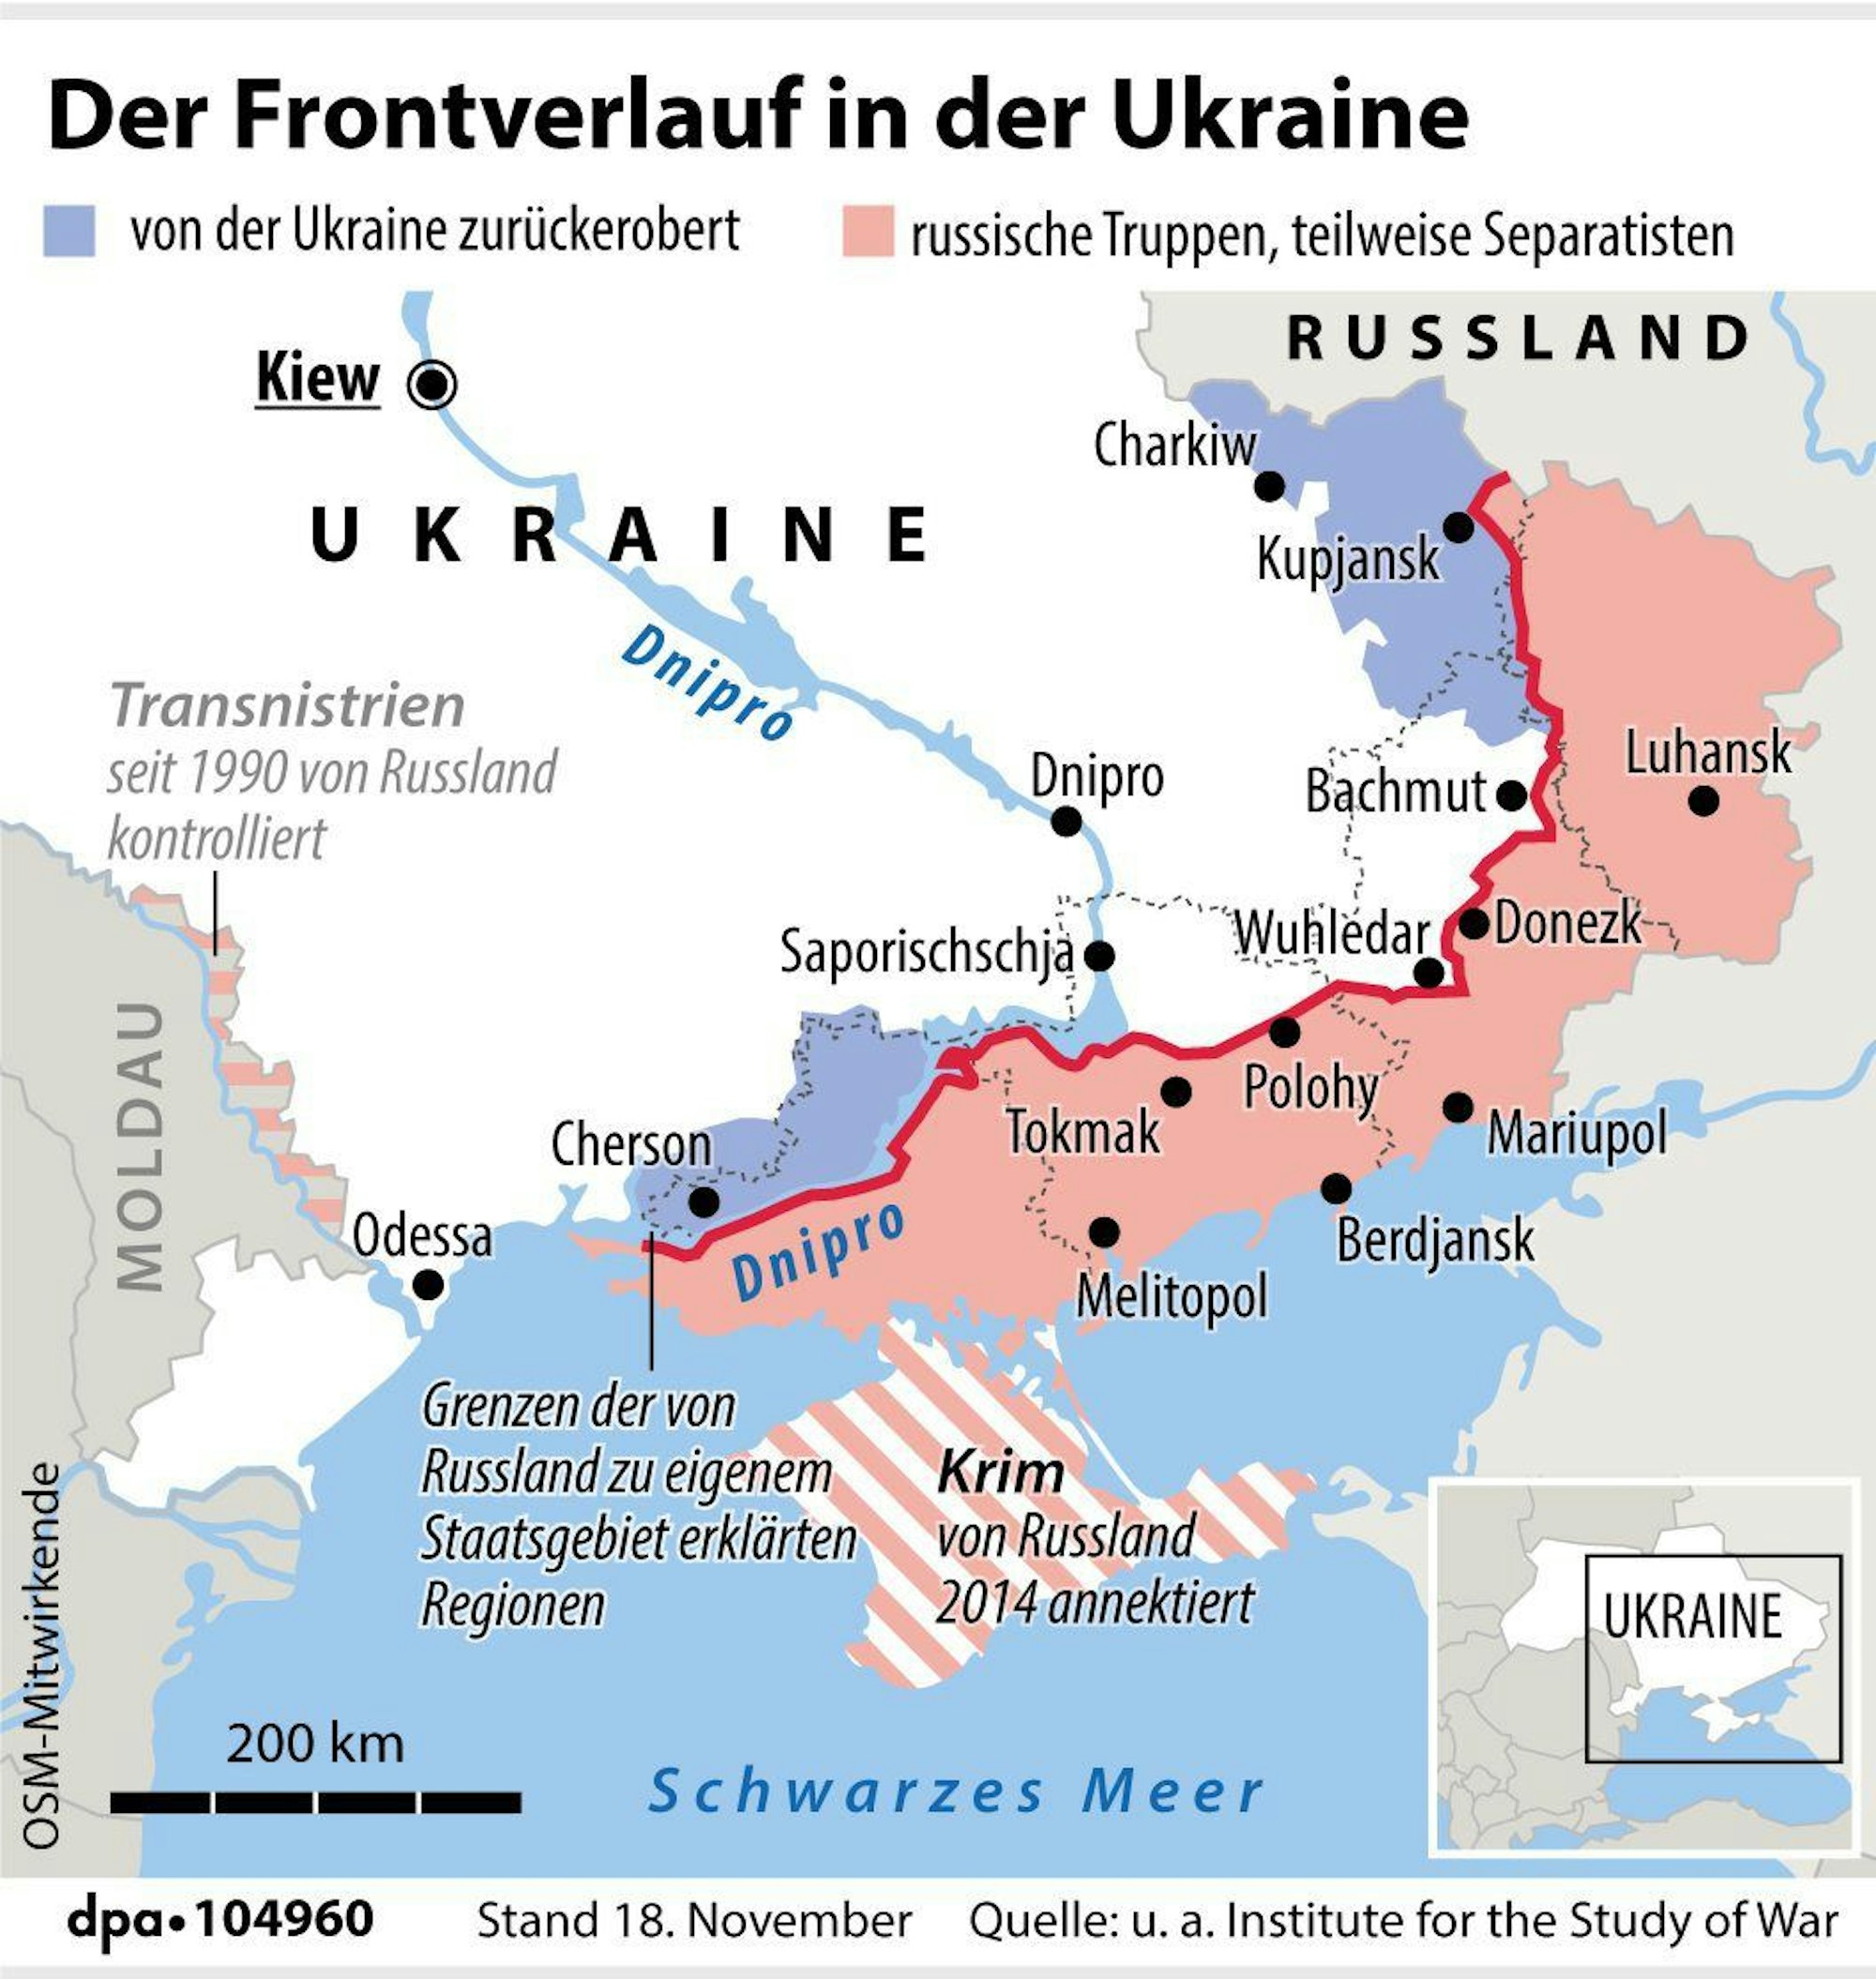 Grafik-Karte "Der Frontverlauf in der Ukraine".